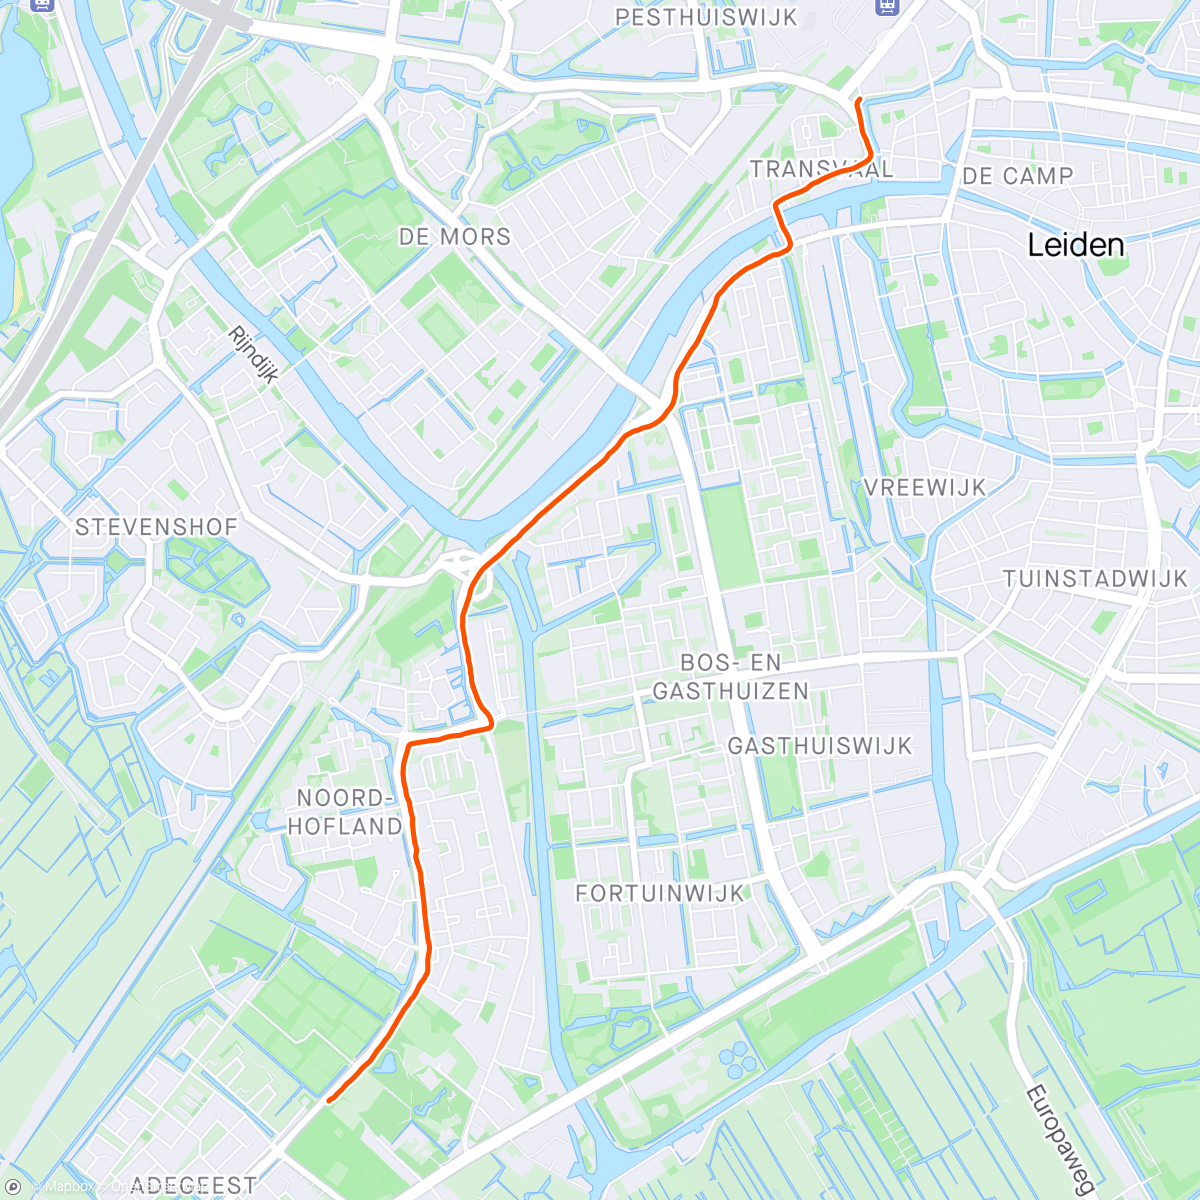 「Lekker wandelen naar de stad met Mariska, terug op de fiets」活動的地圖